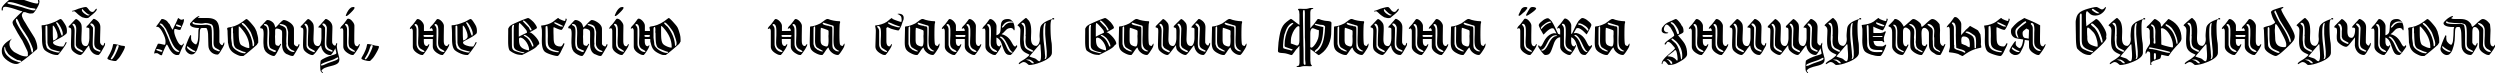 Пример написания шрифтом Hermann-Gotisch DecoC текста на украинском